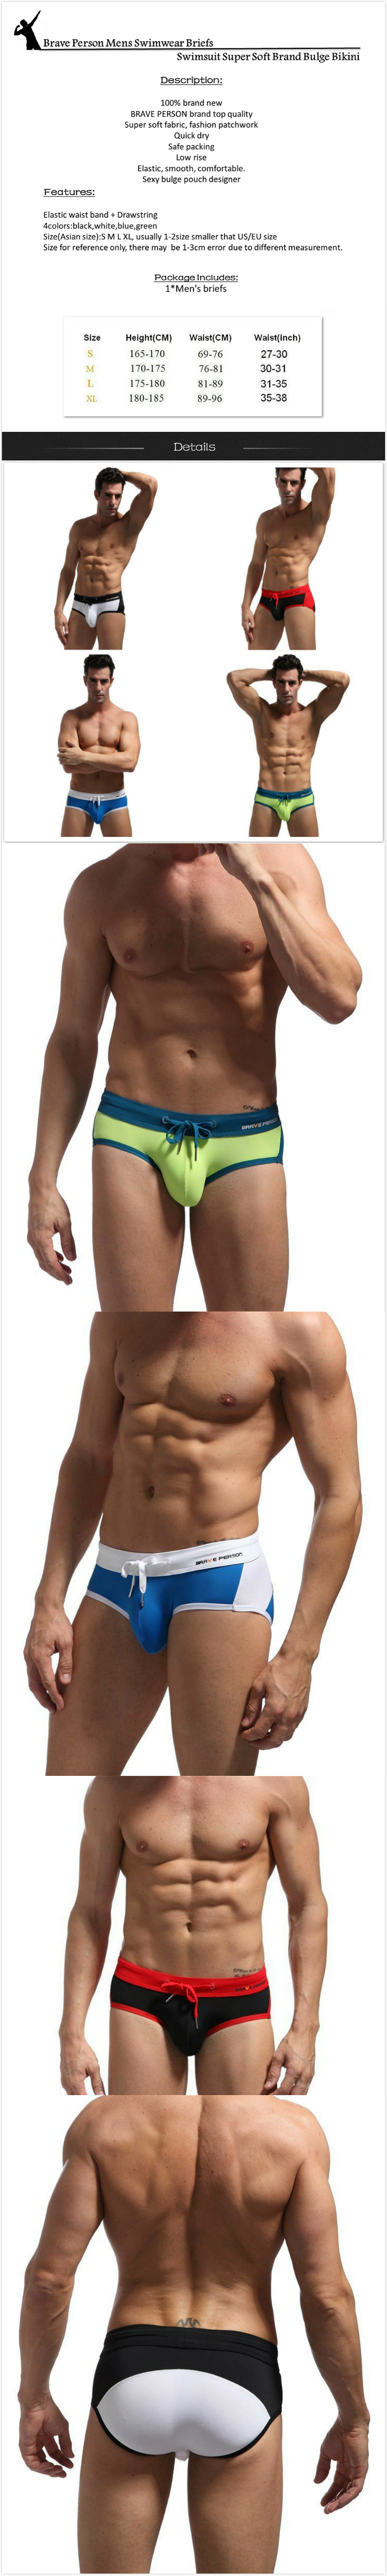 New Mens Swimming Boxer Trunks Bikini Swim Briefs Swimwear Shorts Size S M L XL